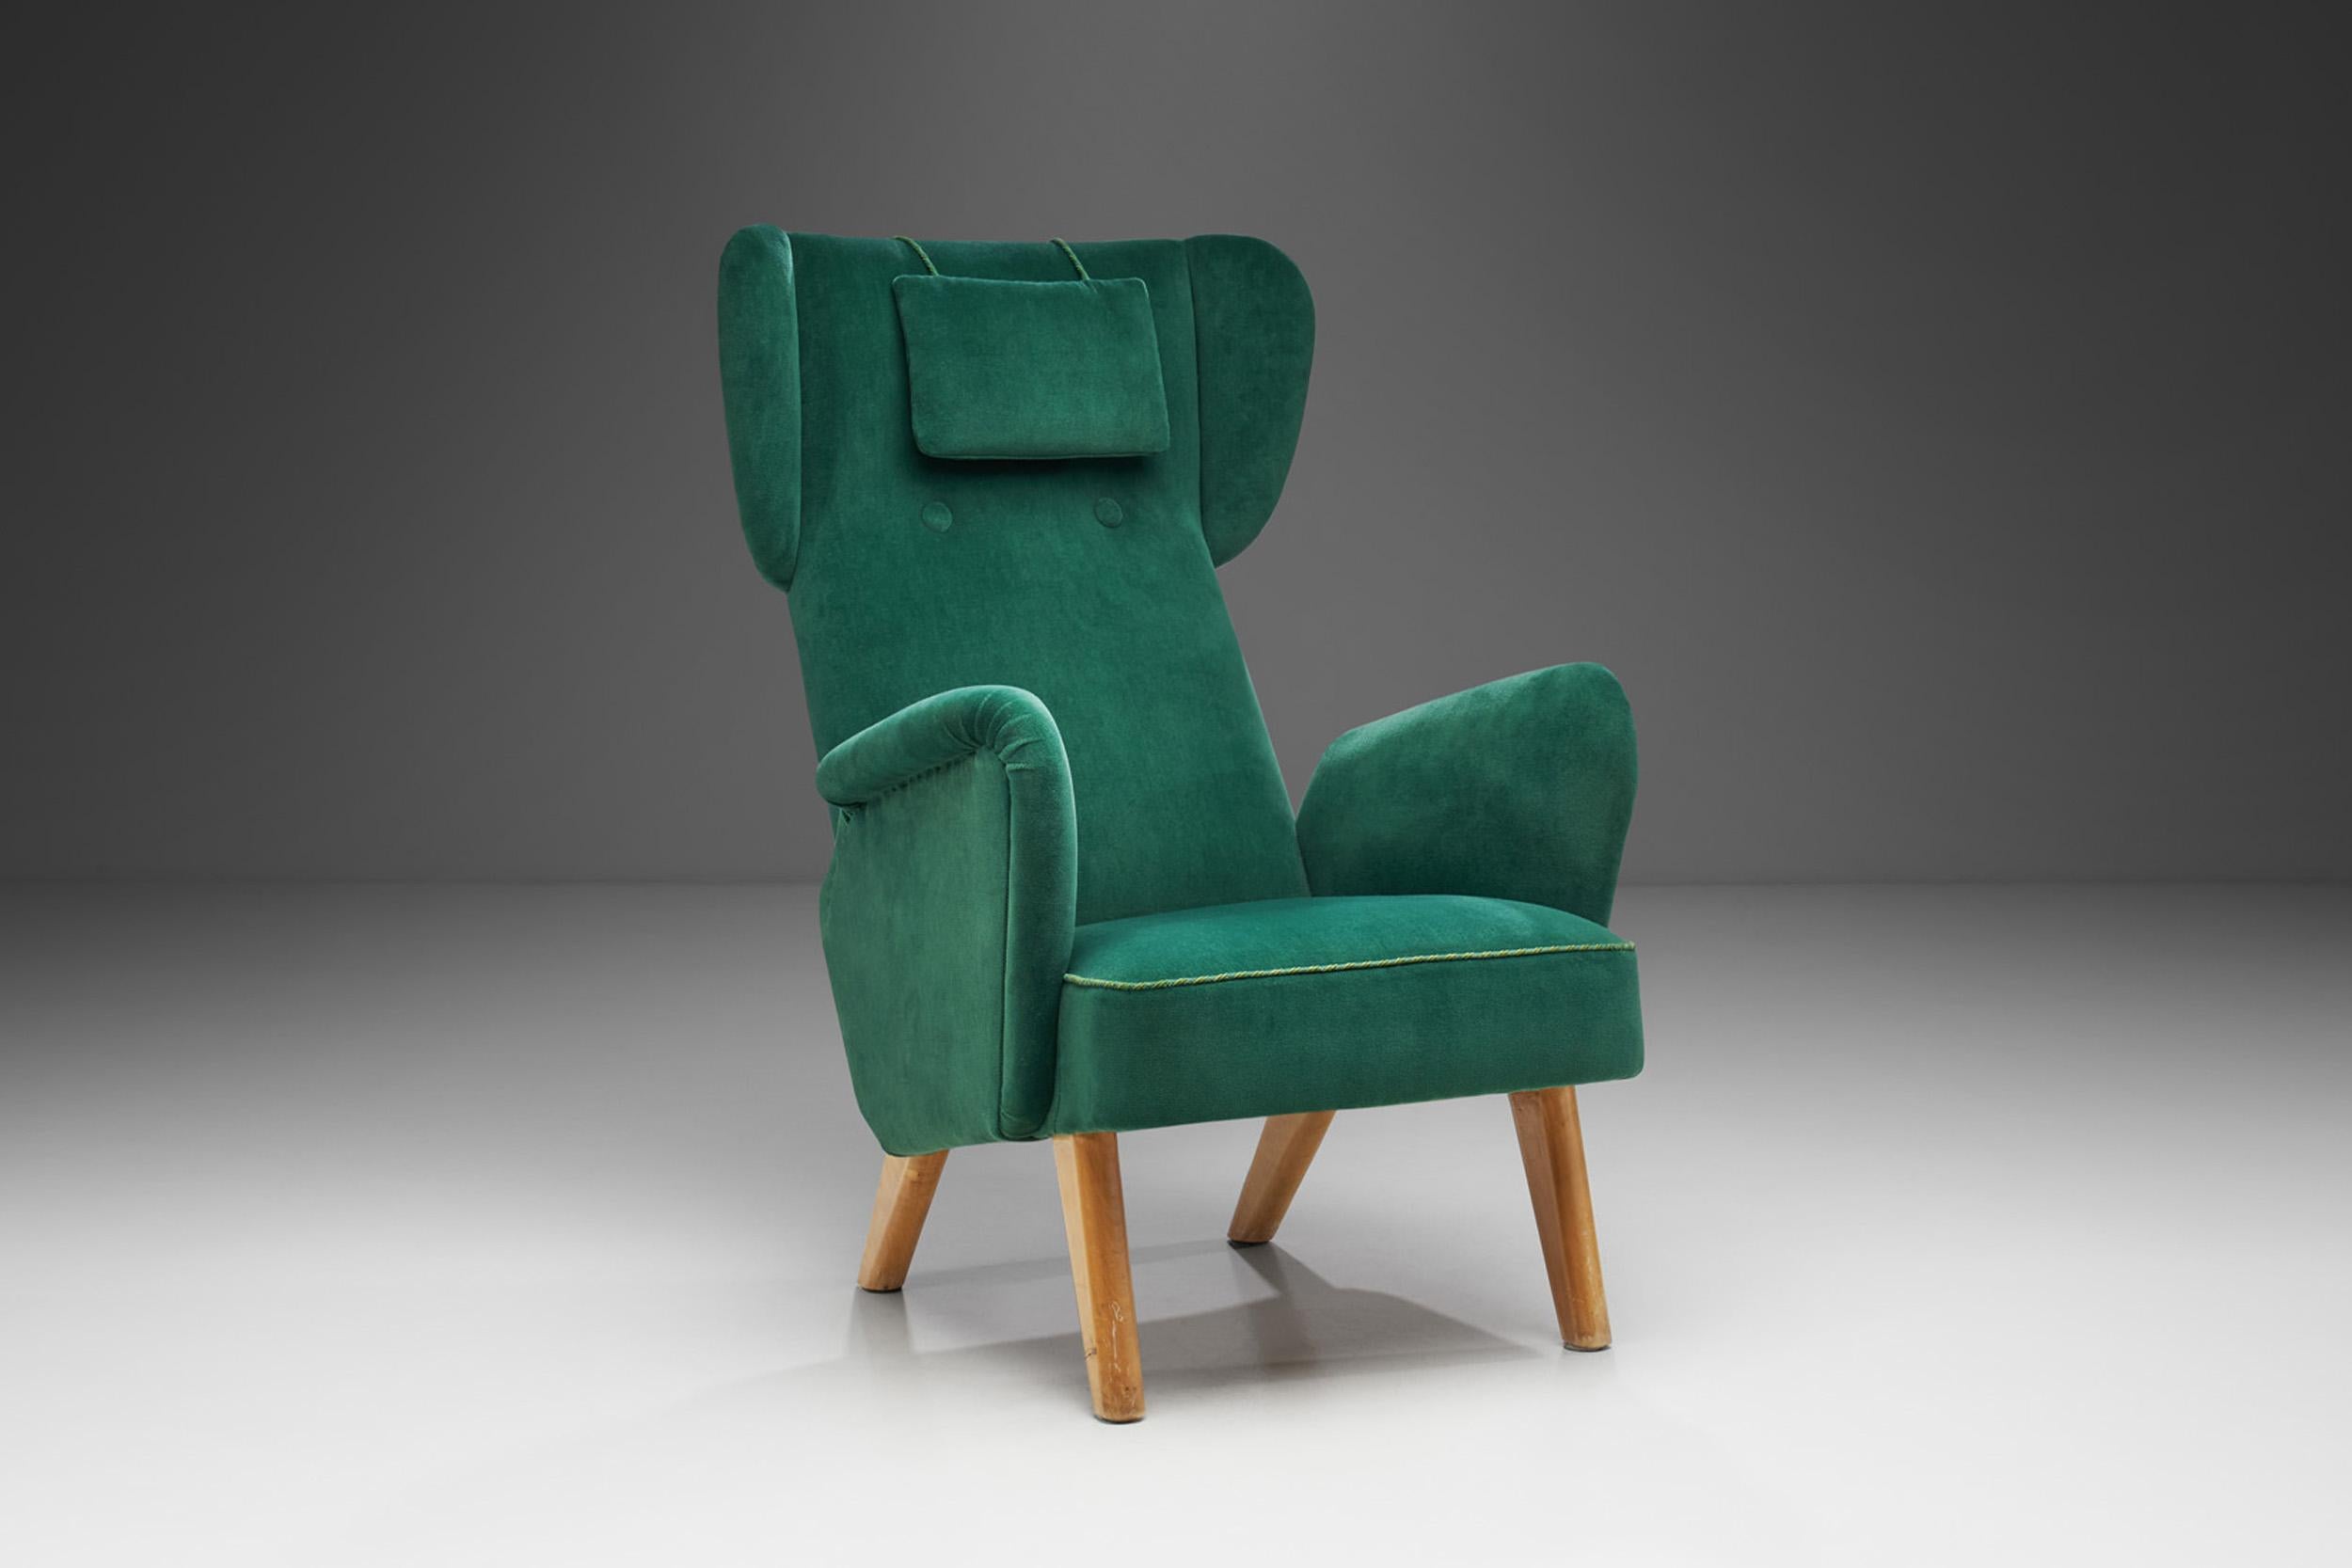 Les sièges conçus par l'architecte et designer Carl Gustaf Hiort Af Ornäs ont été progressivement reconnus dans le monde entier, ce qui a donné lieu à la récente exposition intitulée 